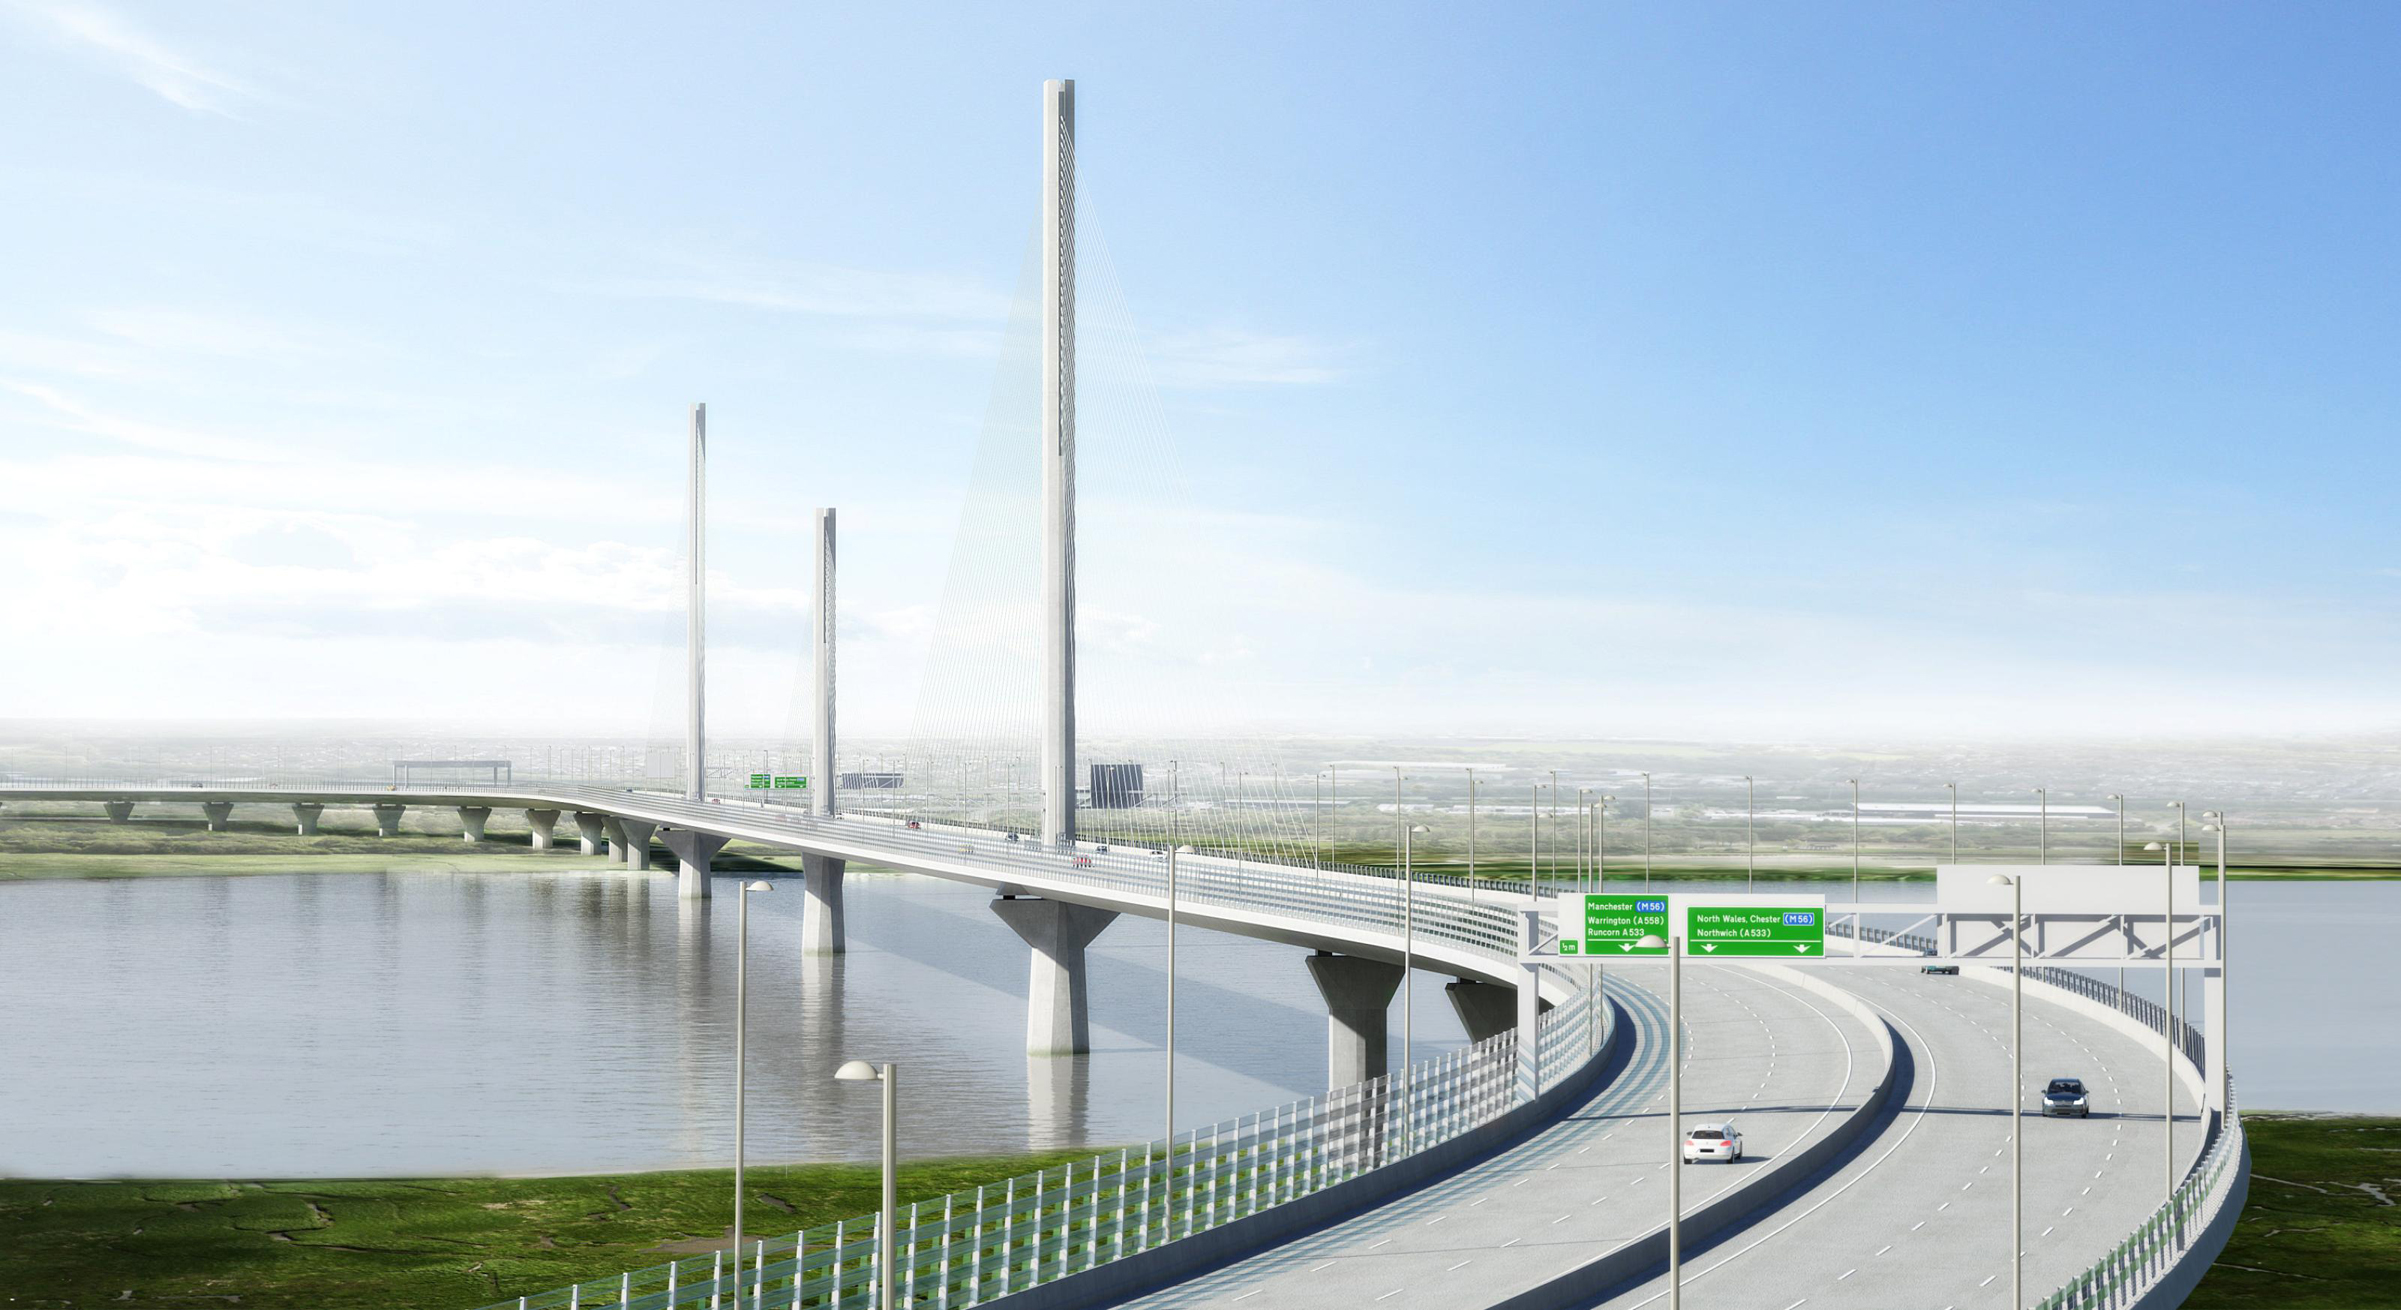 FCC consigue con el puente de Mersey en Liverpool su mayor contrato en Reino Unido por 700 millones de euros